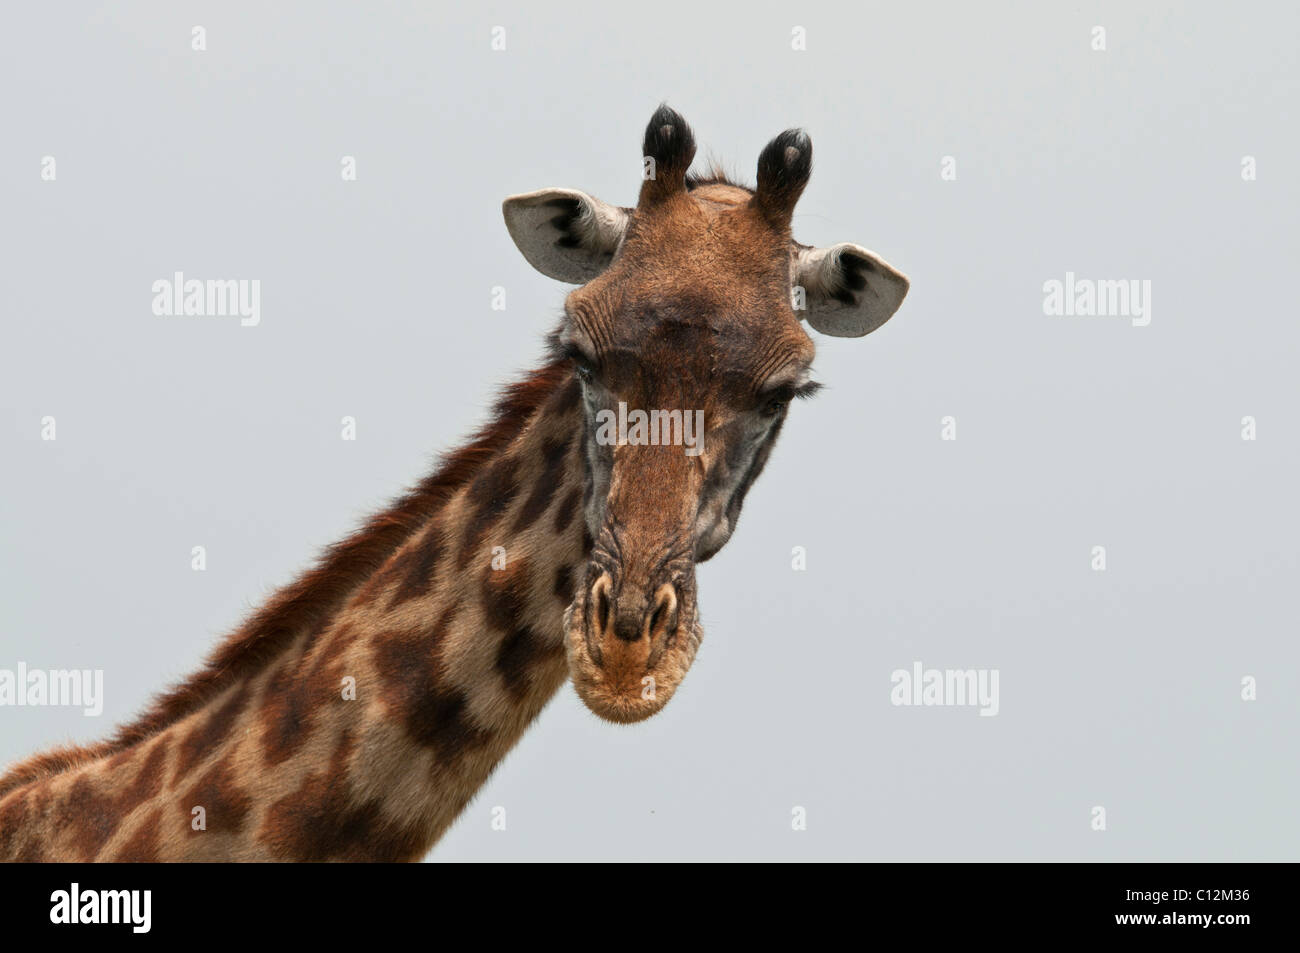 Stock Photo closeup del cuello y de la cara de una jirafa Masai. Foto de stock